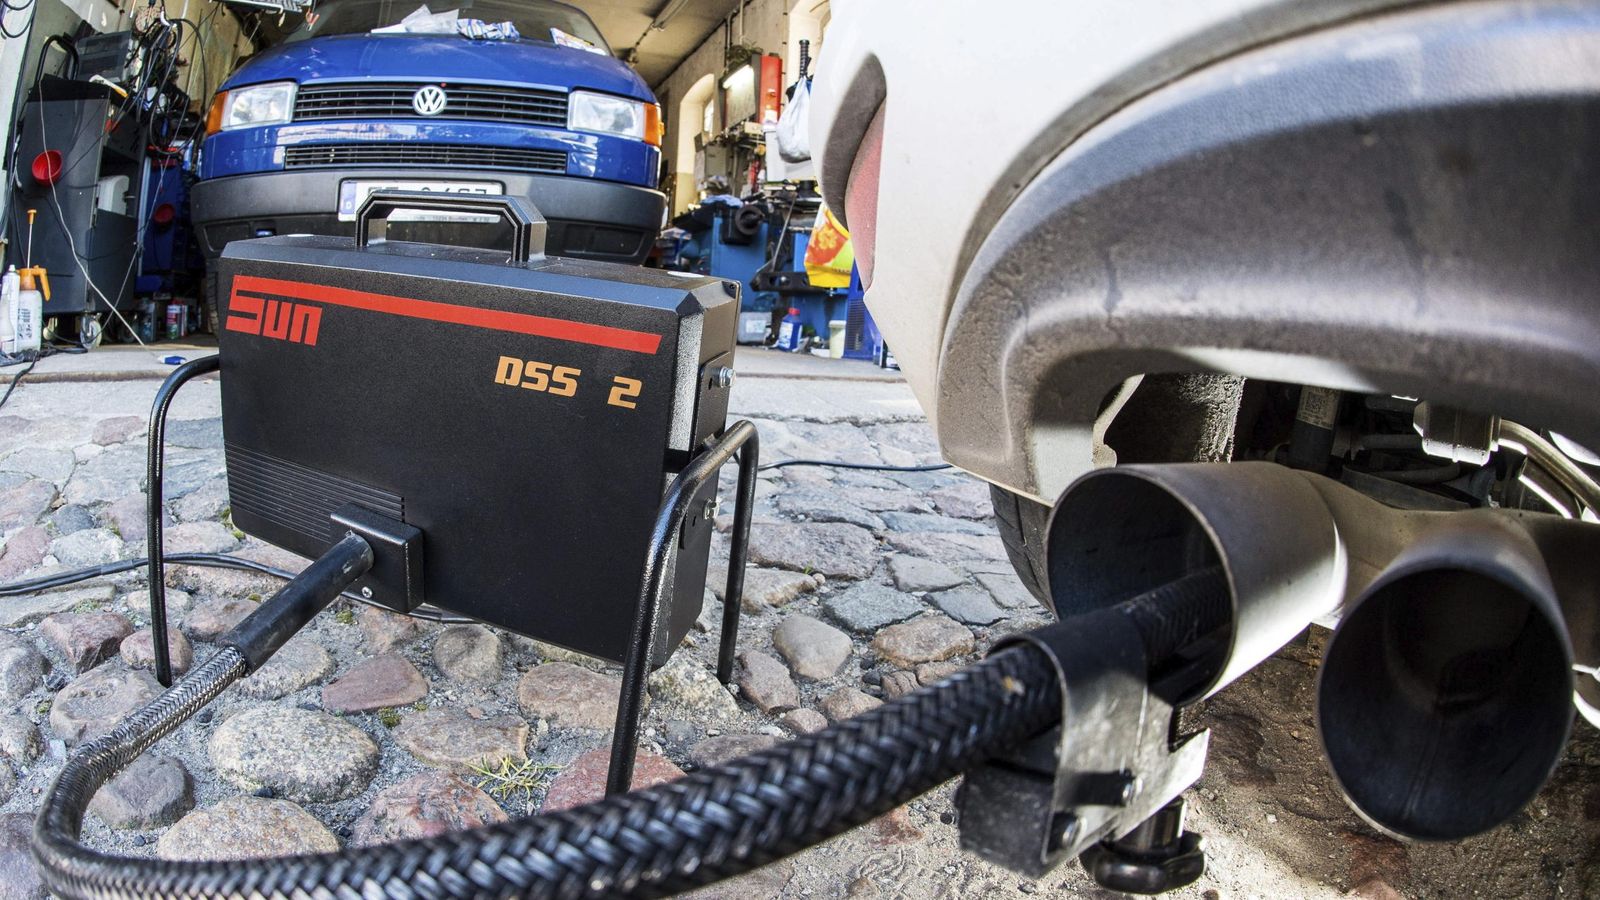 Foto: Un dispositivo mide los niveles de emisiones del motor diésel de un Volkswagen Golf 2.0 TDI en un taller. (EFE)